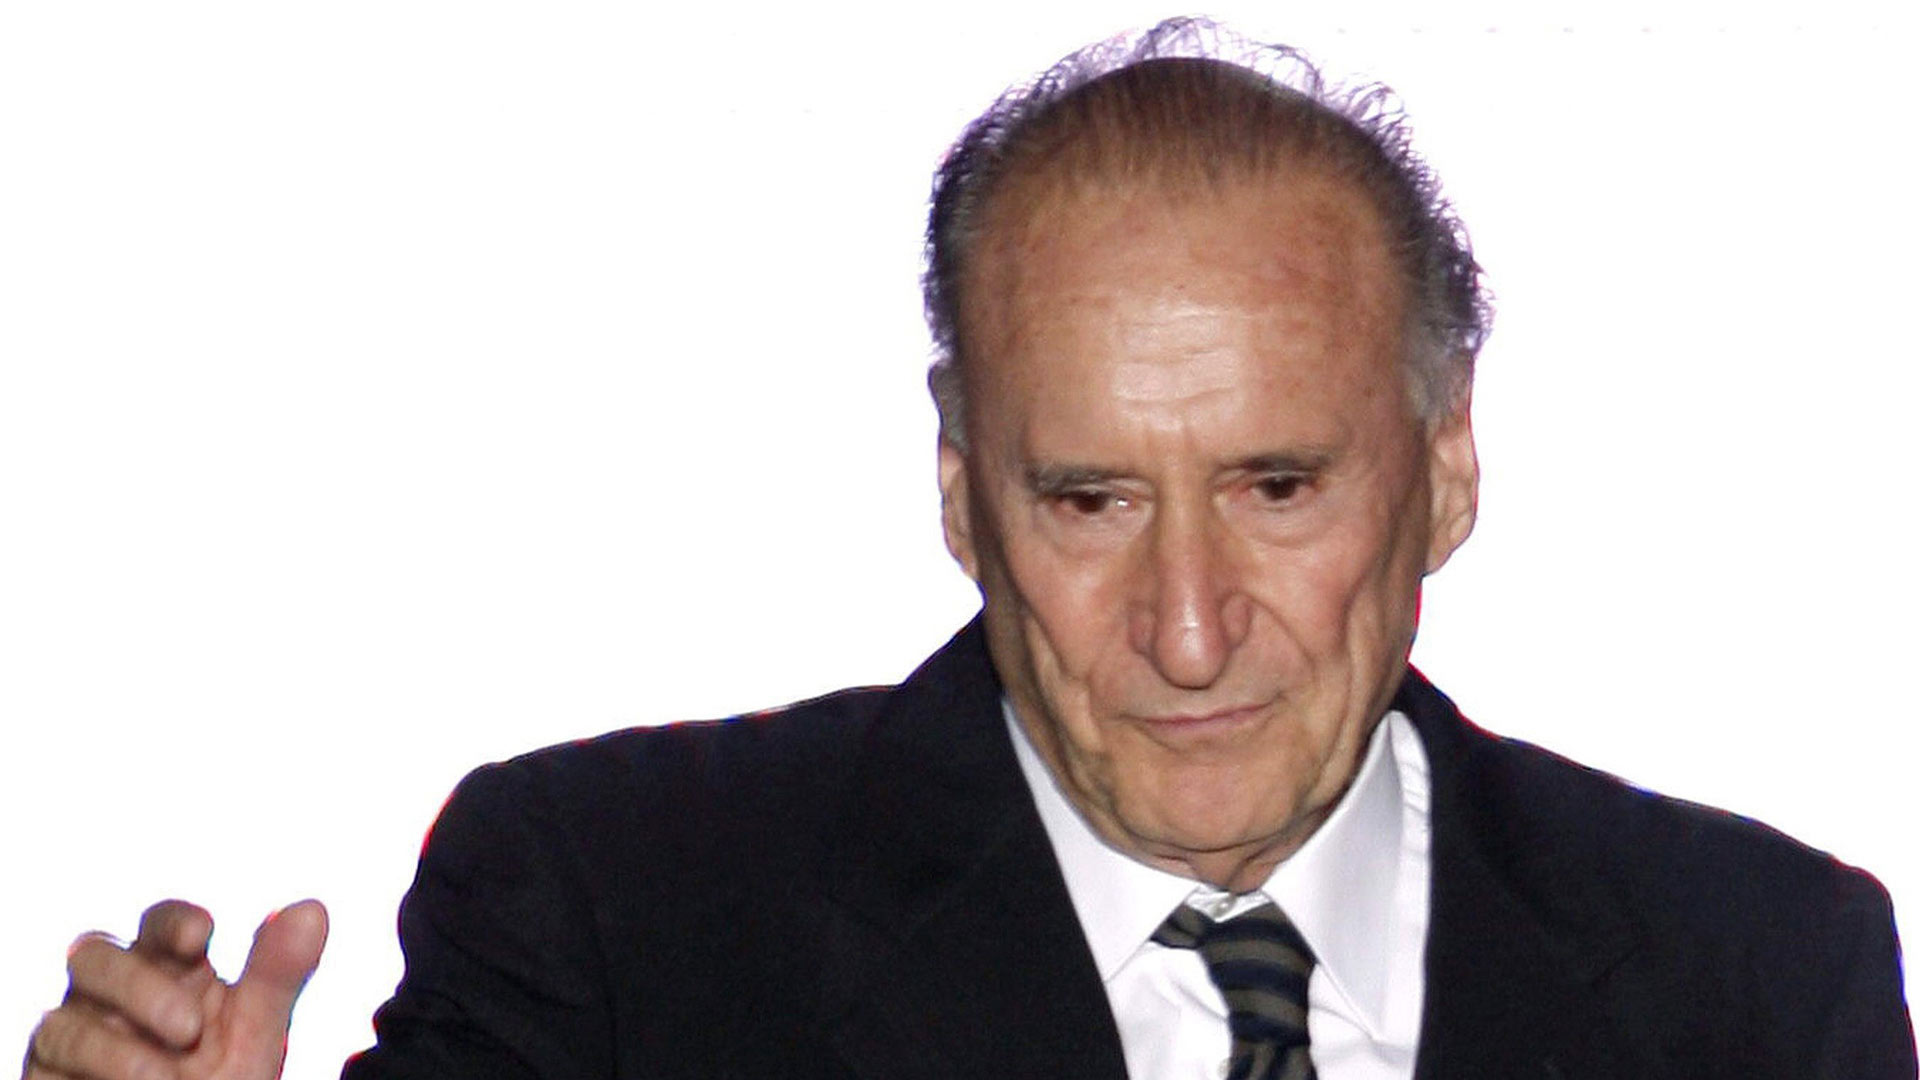 Fallece Andrés Sardá, el ingeniero que revolucionó la ropa interior, a los 90 años